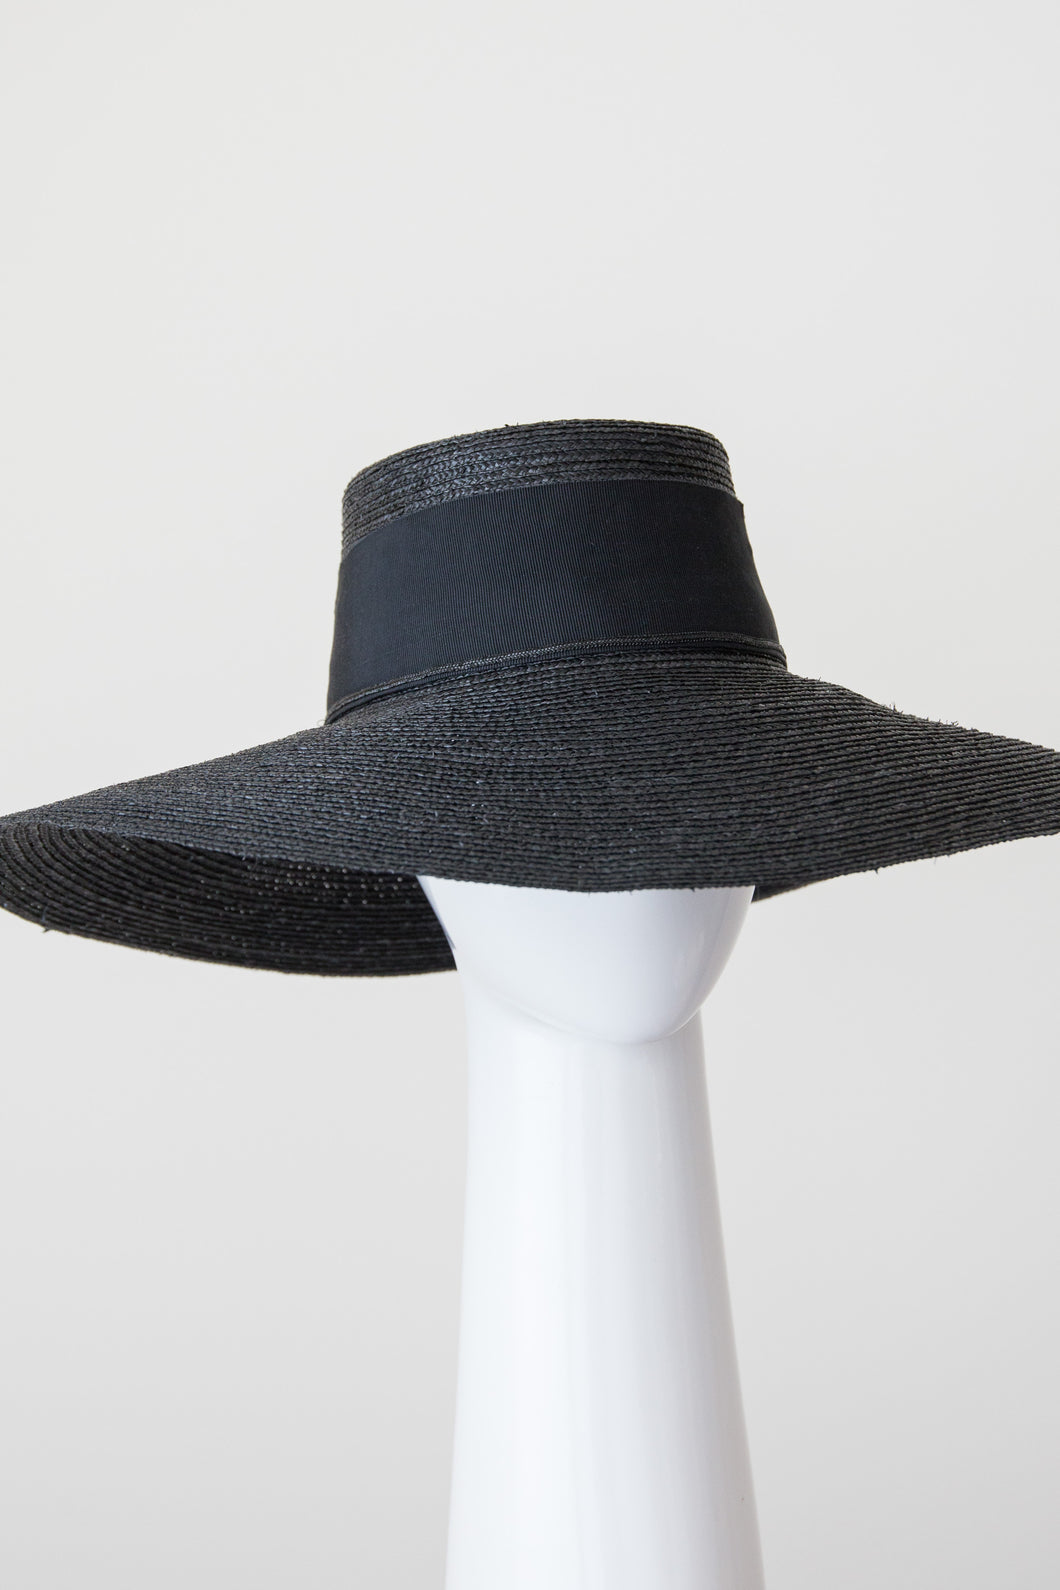 Black Milan braid straw wide brimmed sun hat